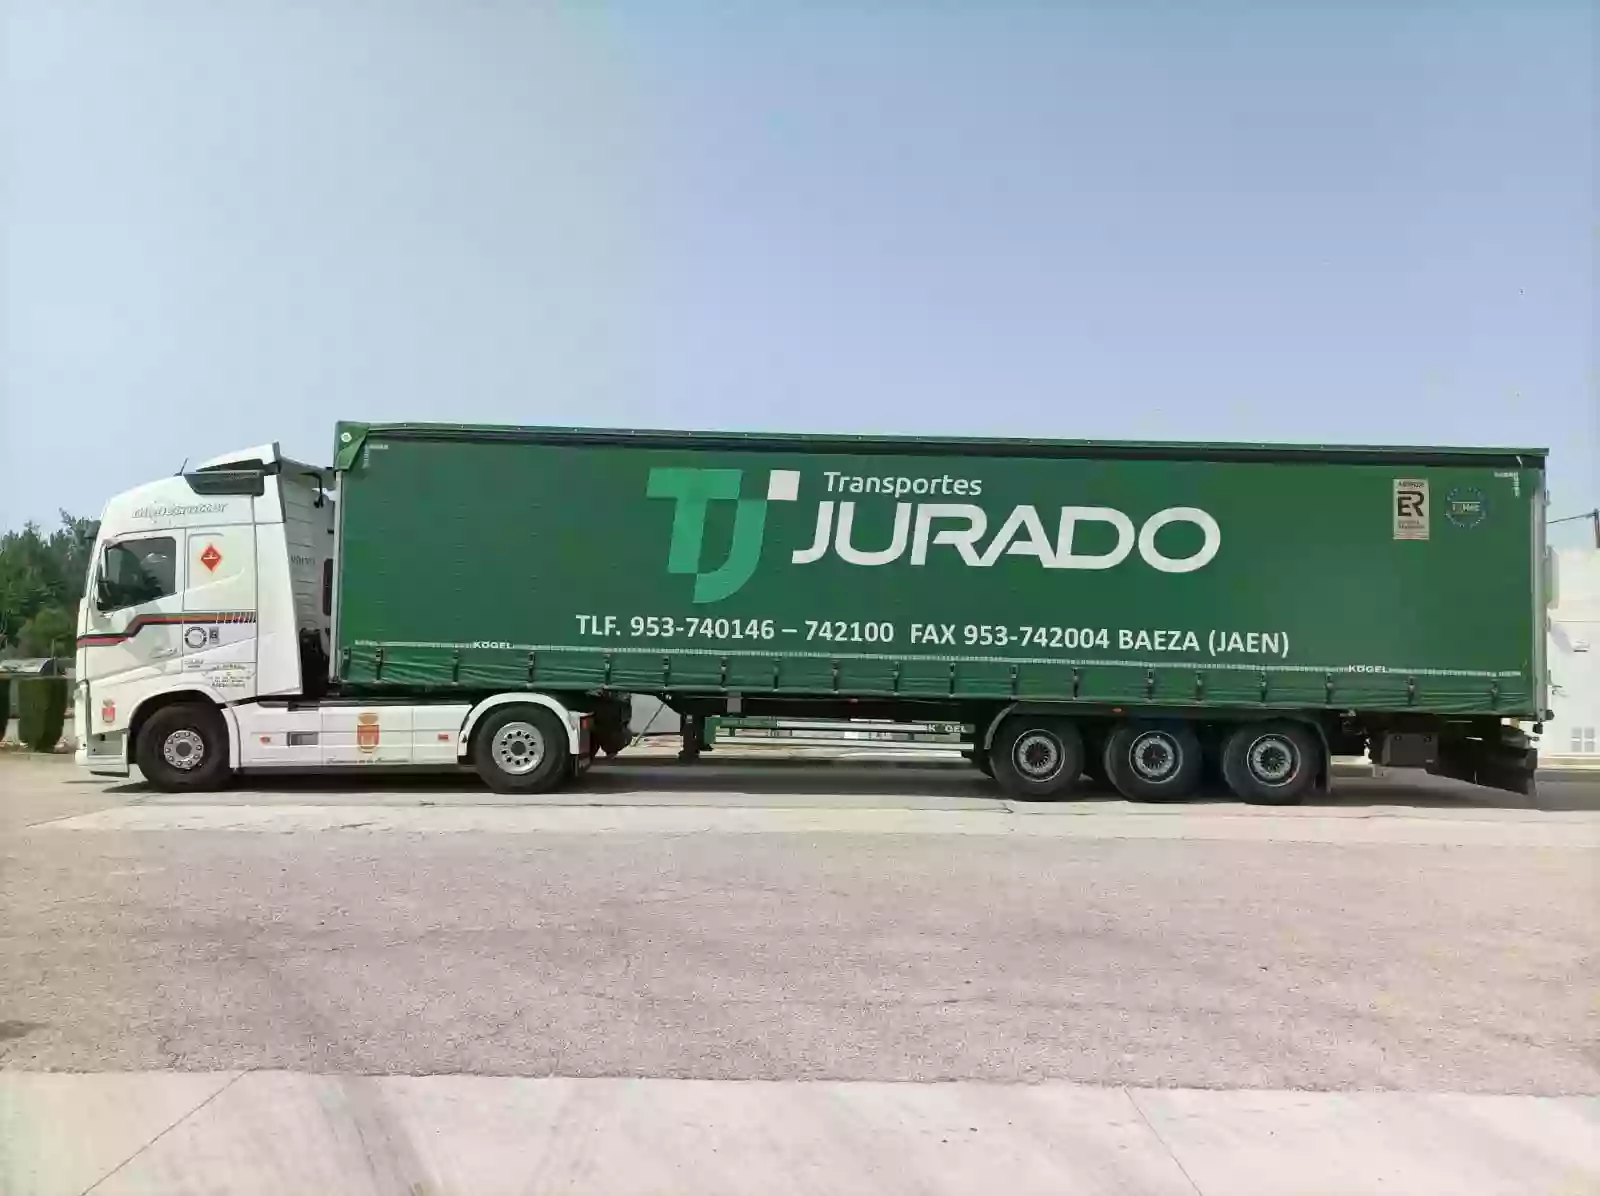 Agencia de Transportes Luis Jurado Cabrera S.L.